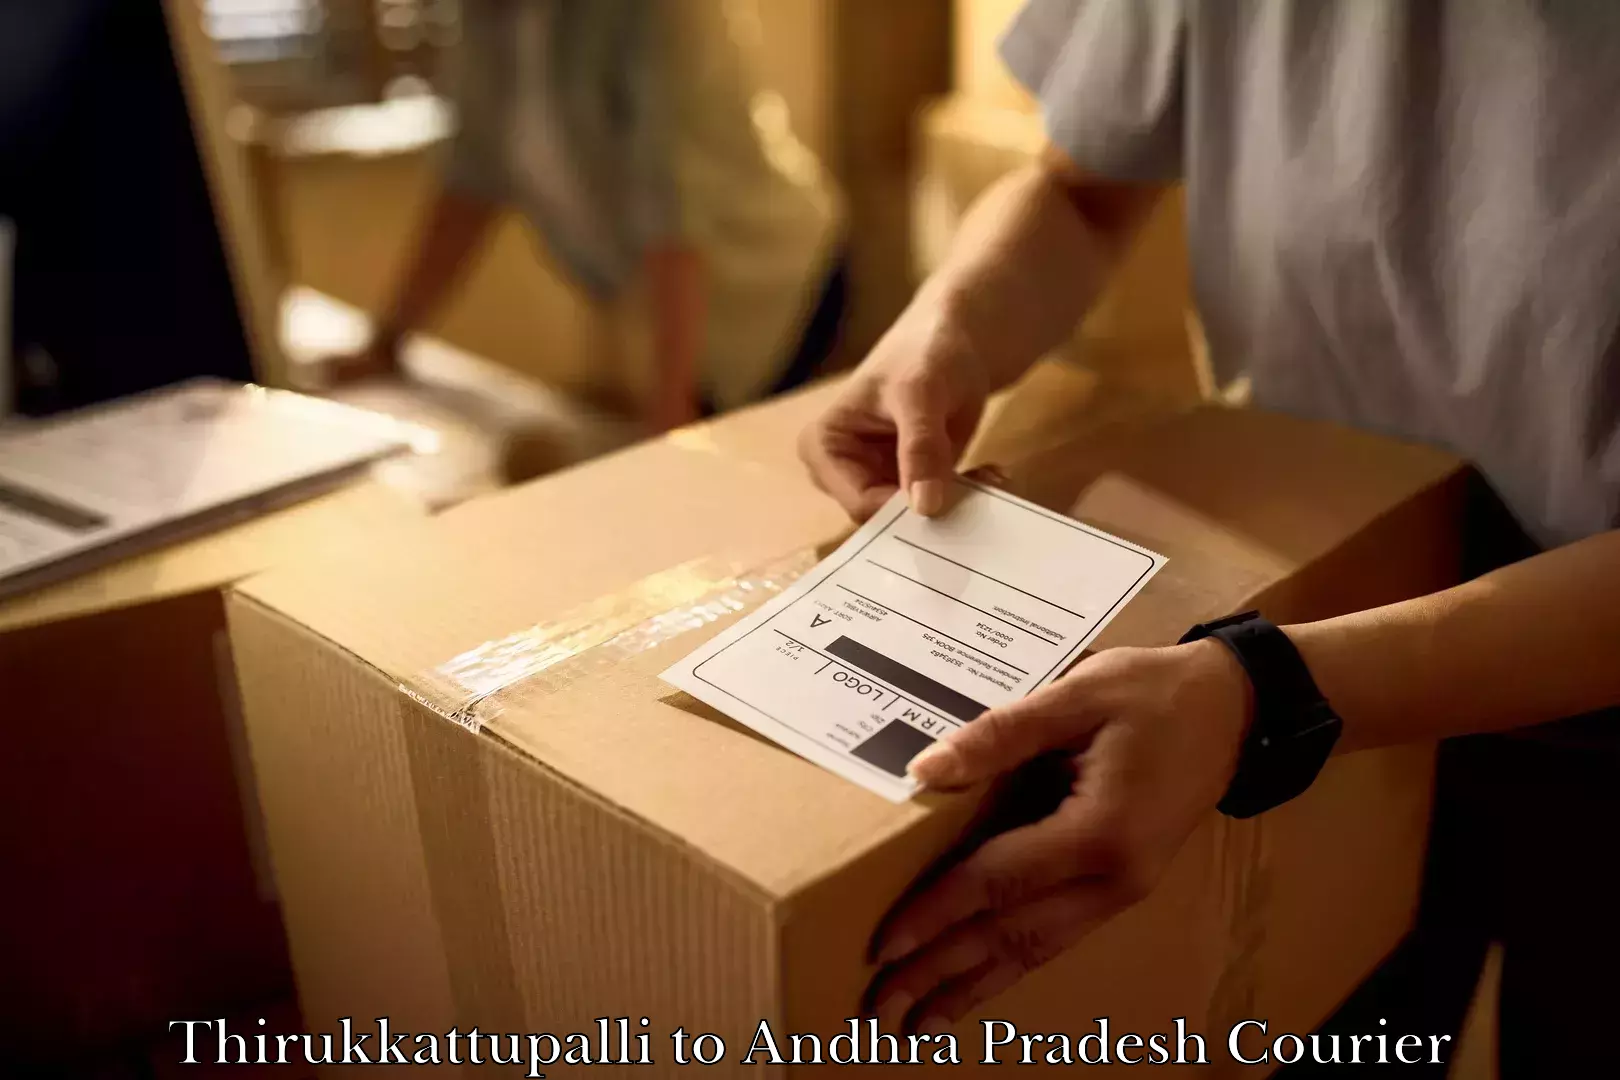 Professional movers and packers Thirukkattupalli to Pamuru